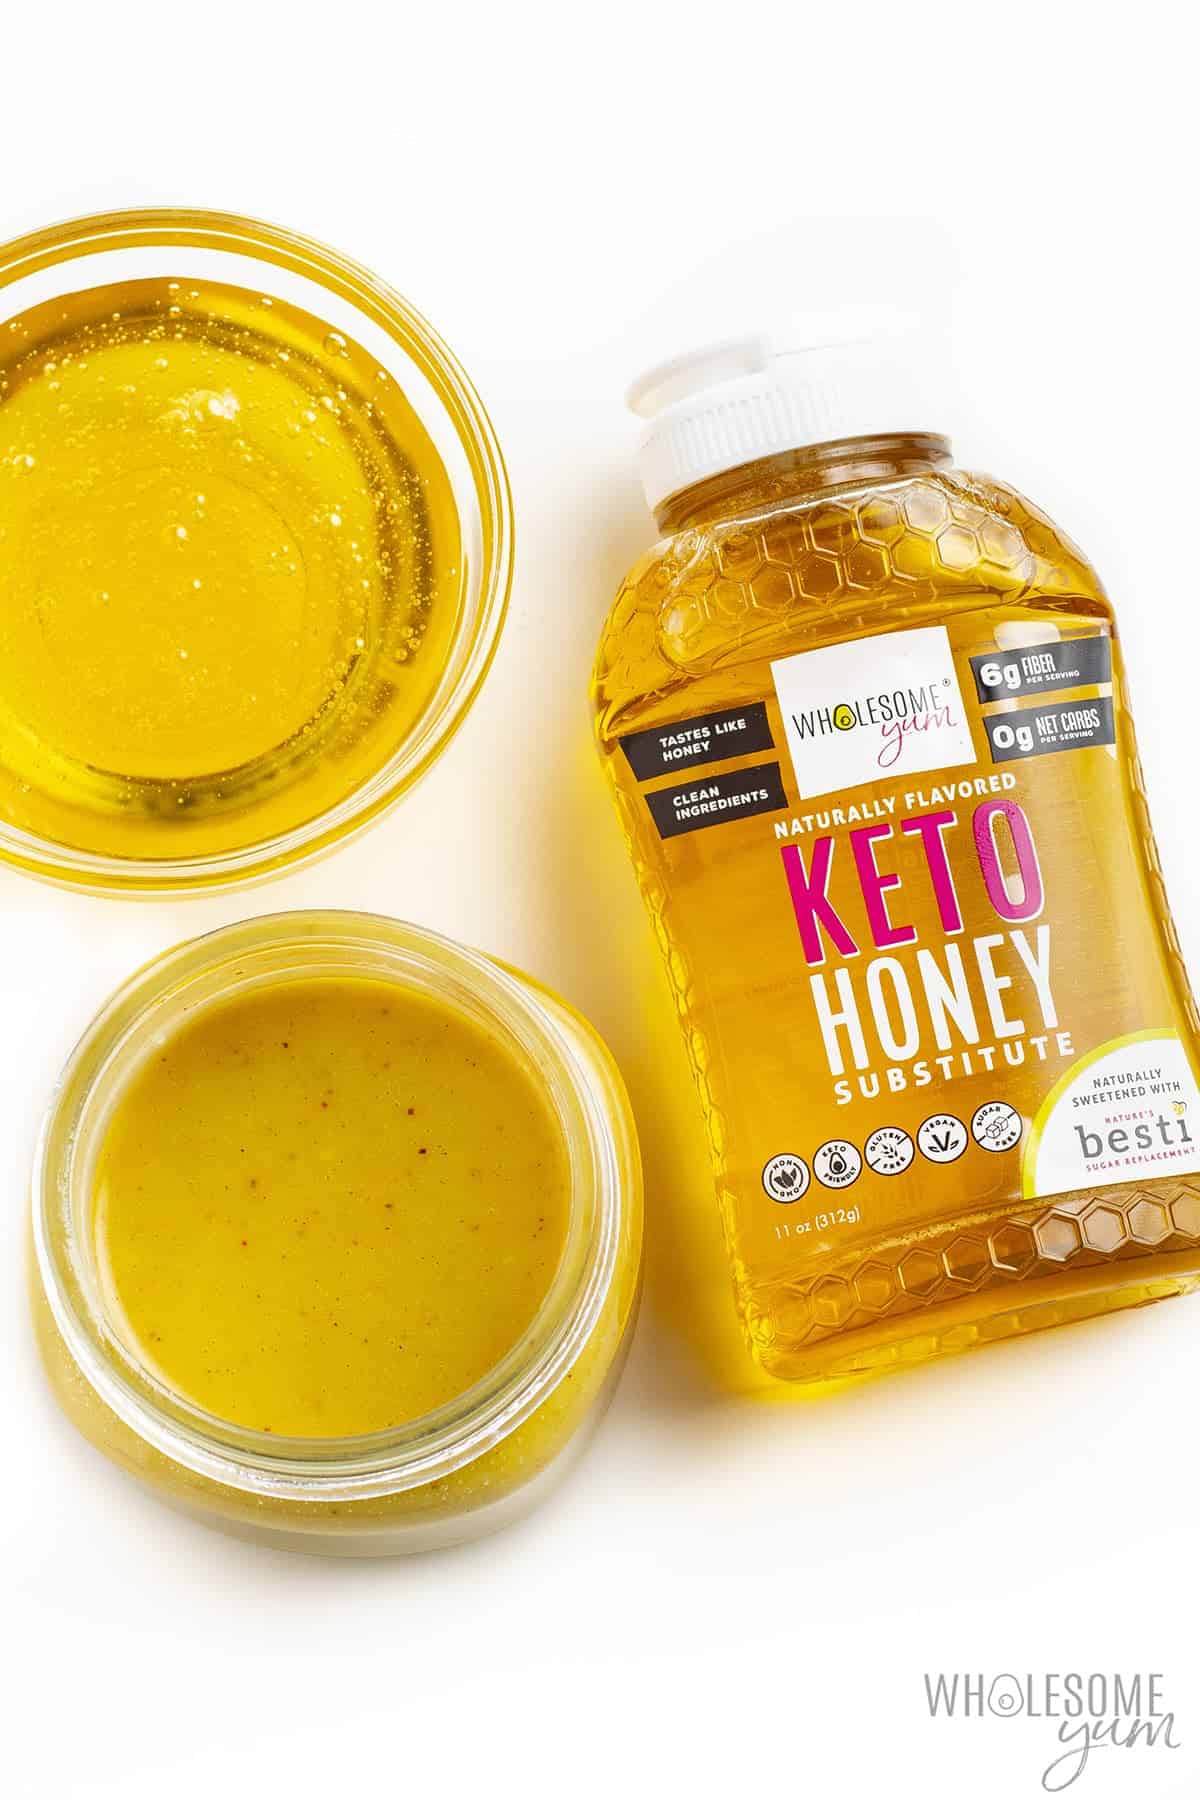 Keto honey mustard next to bottle of Wholesome Yum Keto Honey.